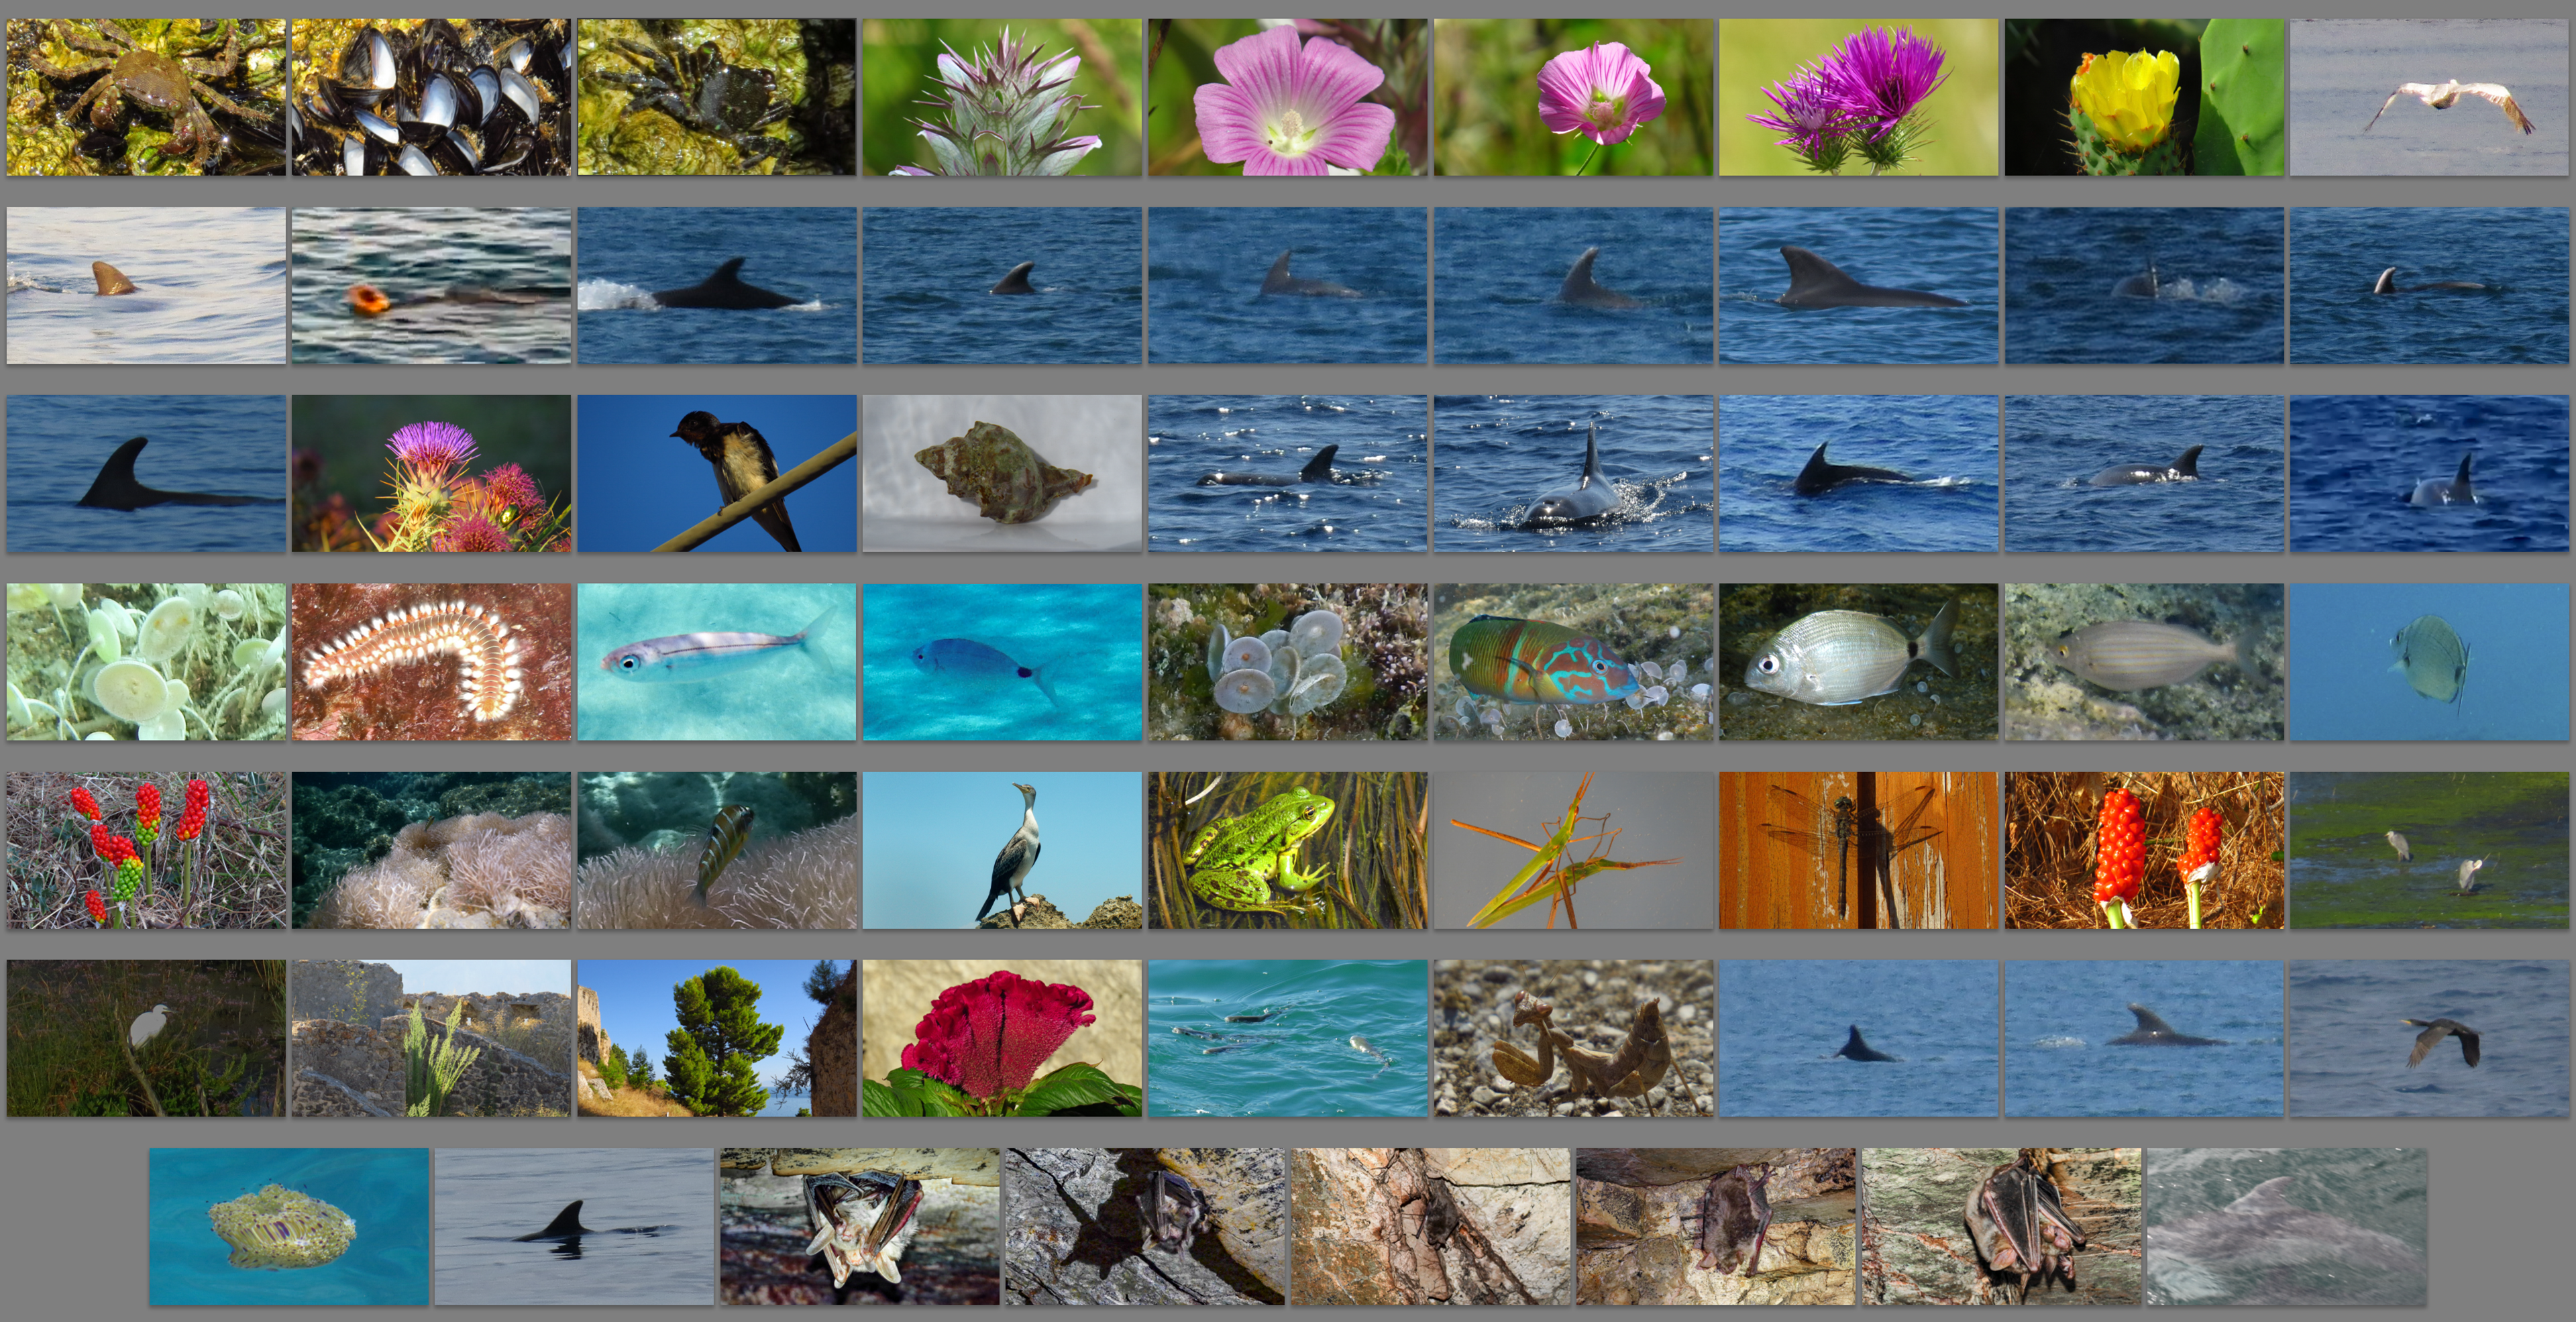 Erfassung der Natur-Beobachtungen der Saison 2014 für iNaturalist.org abgeschlossen